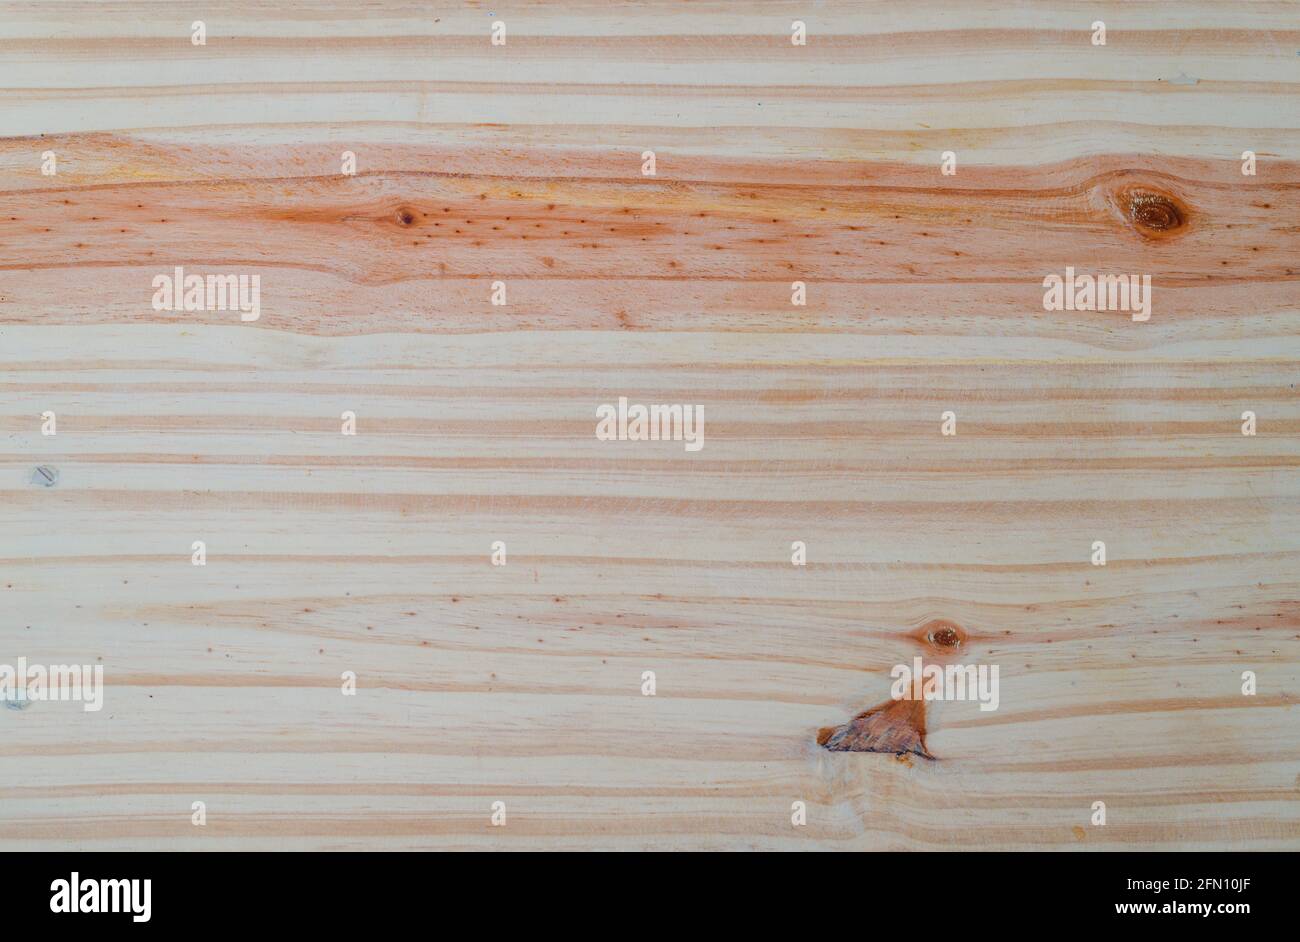 Patrón de textura de superficie de madera natural para fondo, vista aérea de la superficie blanda de la tabla de corte de madera. Foto de stock